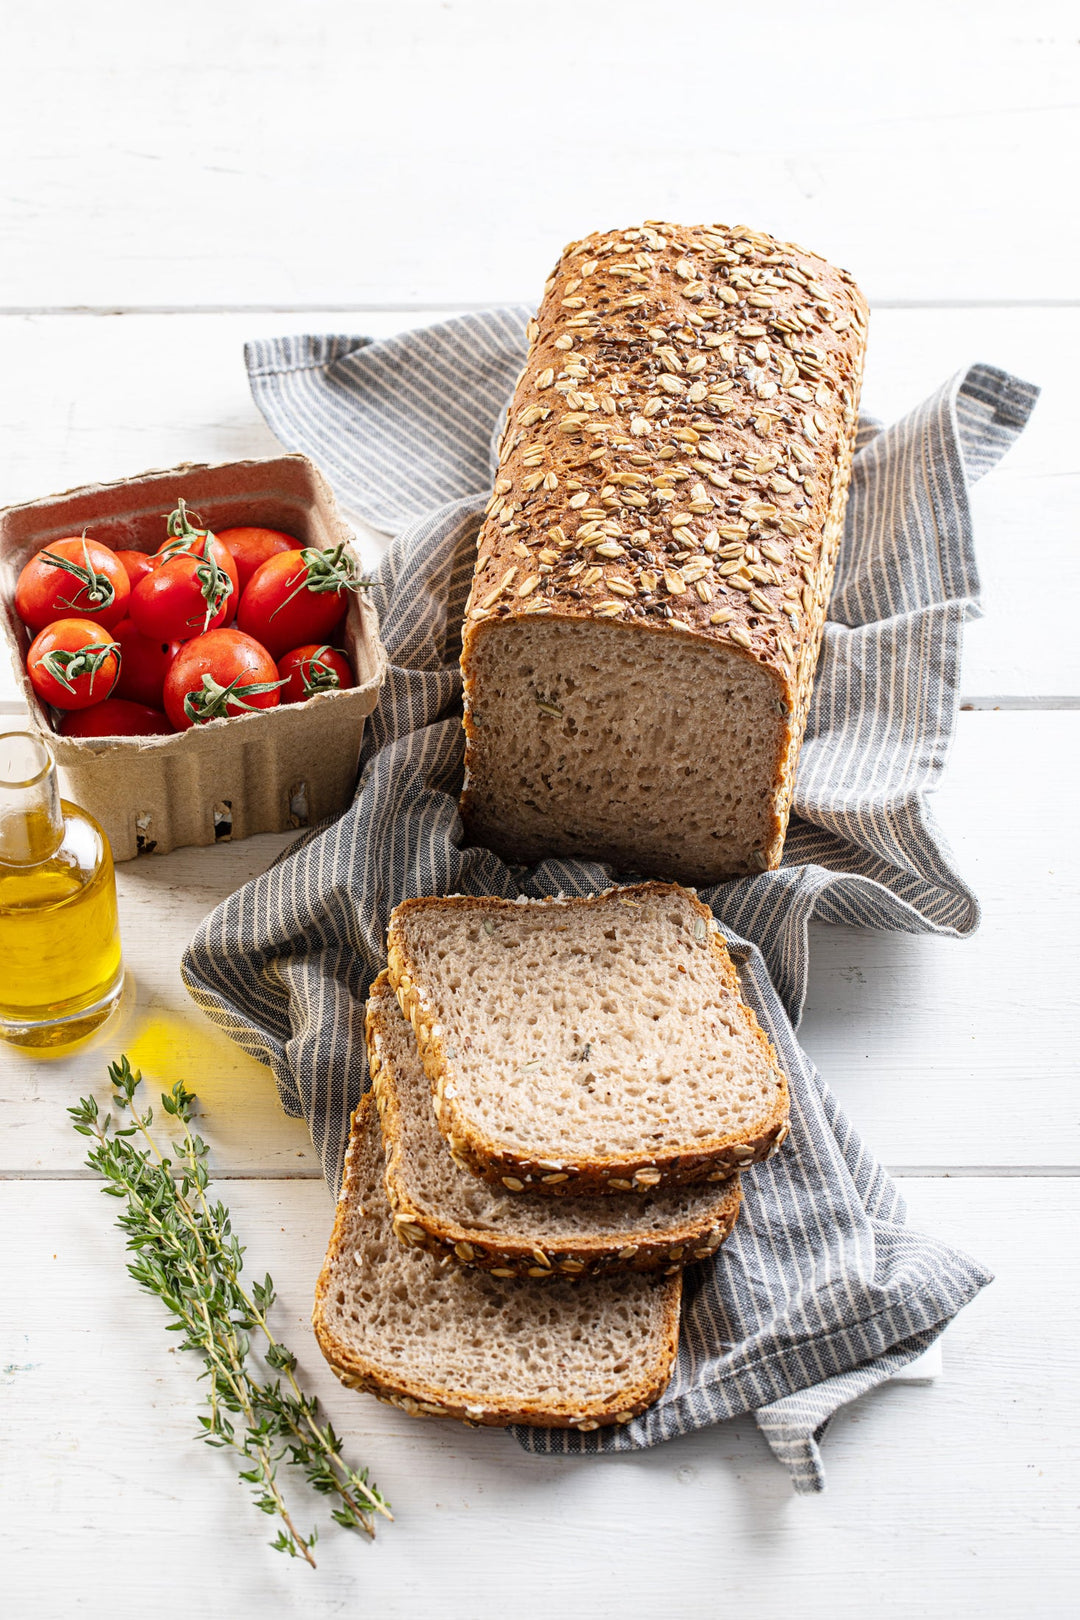 לחם דגנים ללא גלוטן של קמח תמי. עשיר בסיבים תזונתיים.